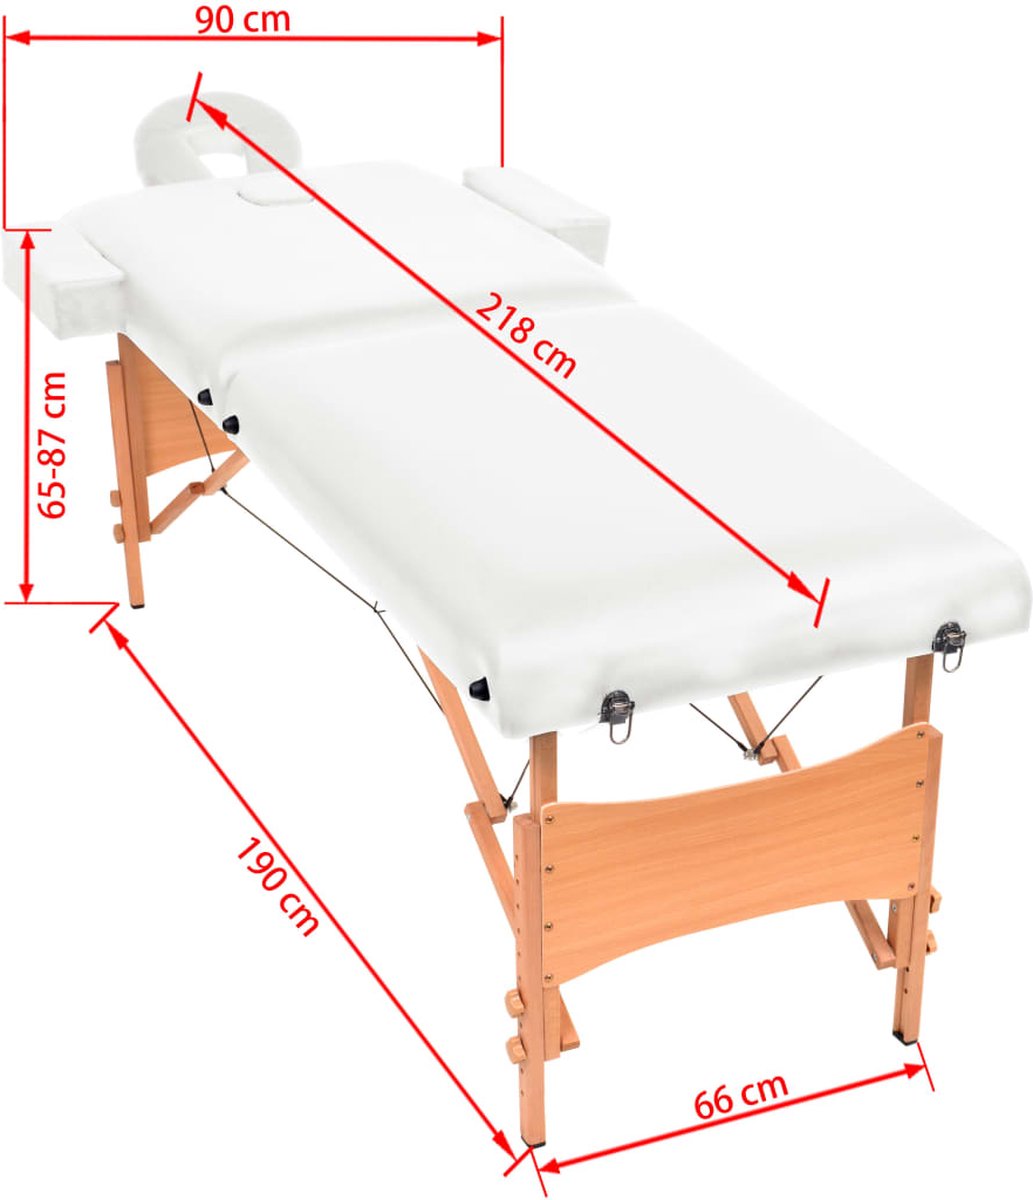 tectake - Table de massage - matelas 10 cm - sac de transport inclus,  couleur beige 